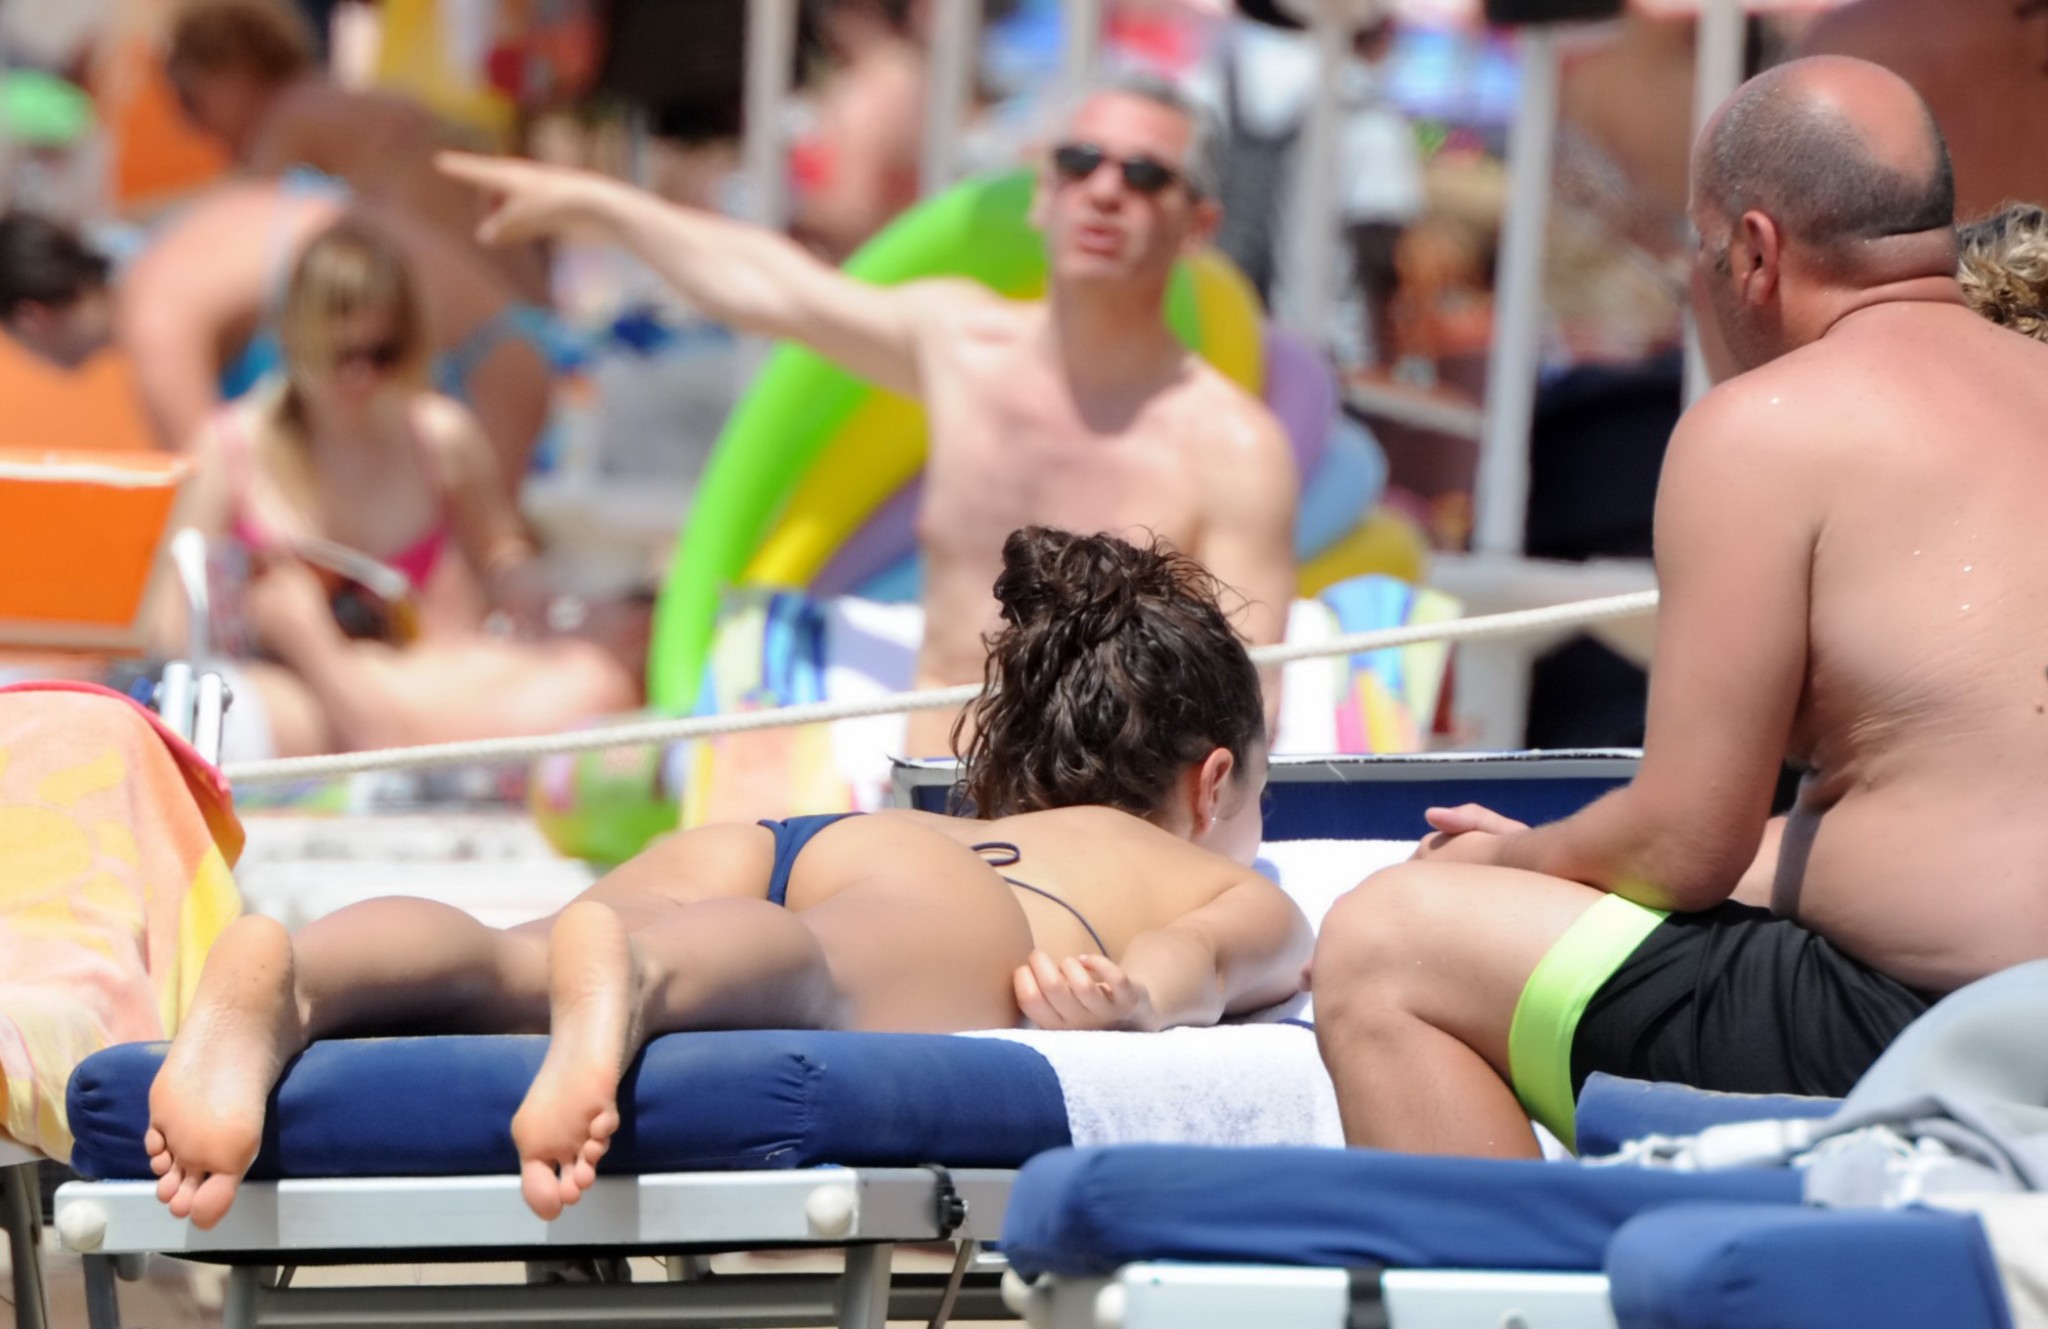 Laura barriales montre son petit cul en bikini bleu sur la plage.
 #75193952